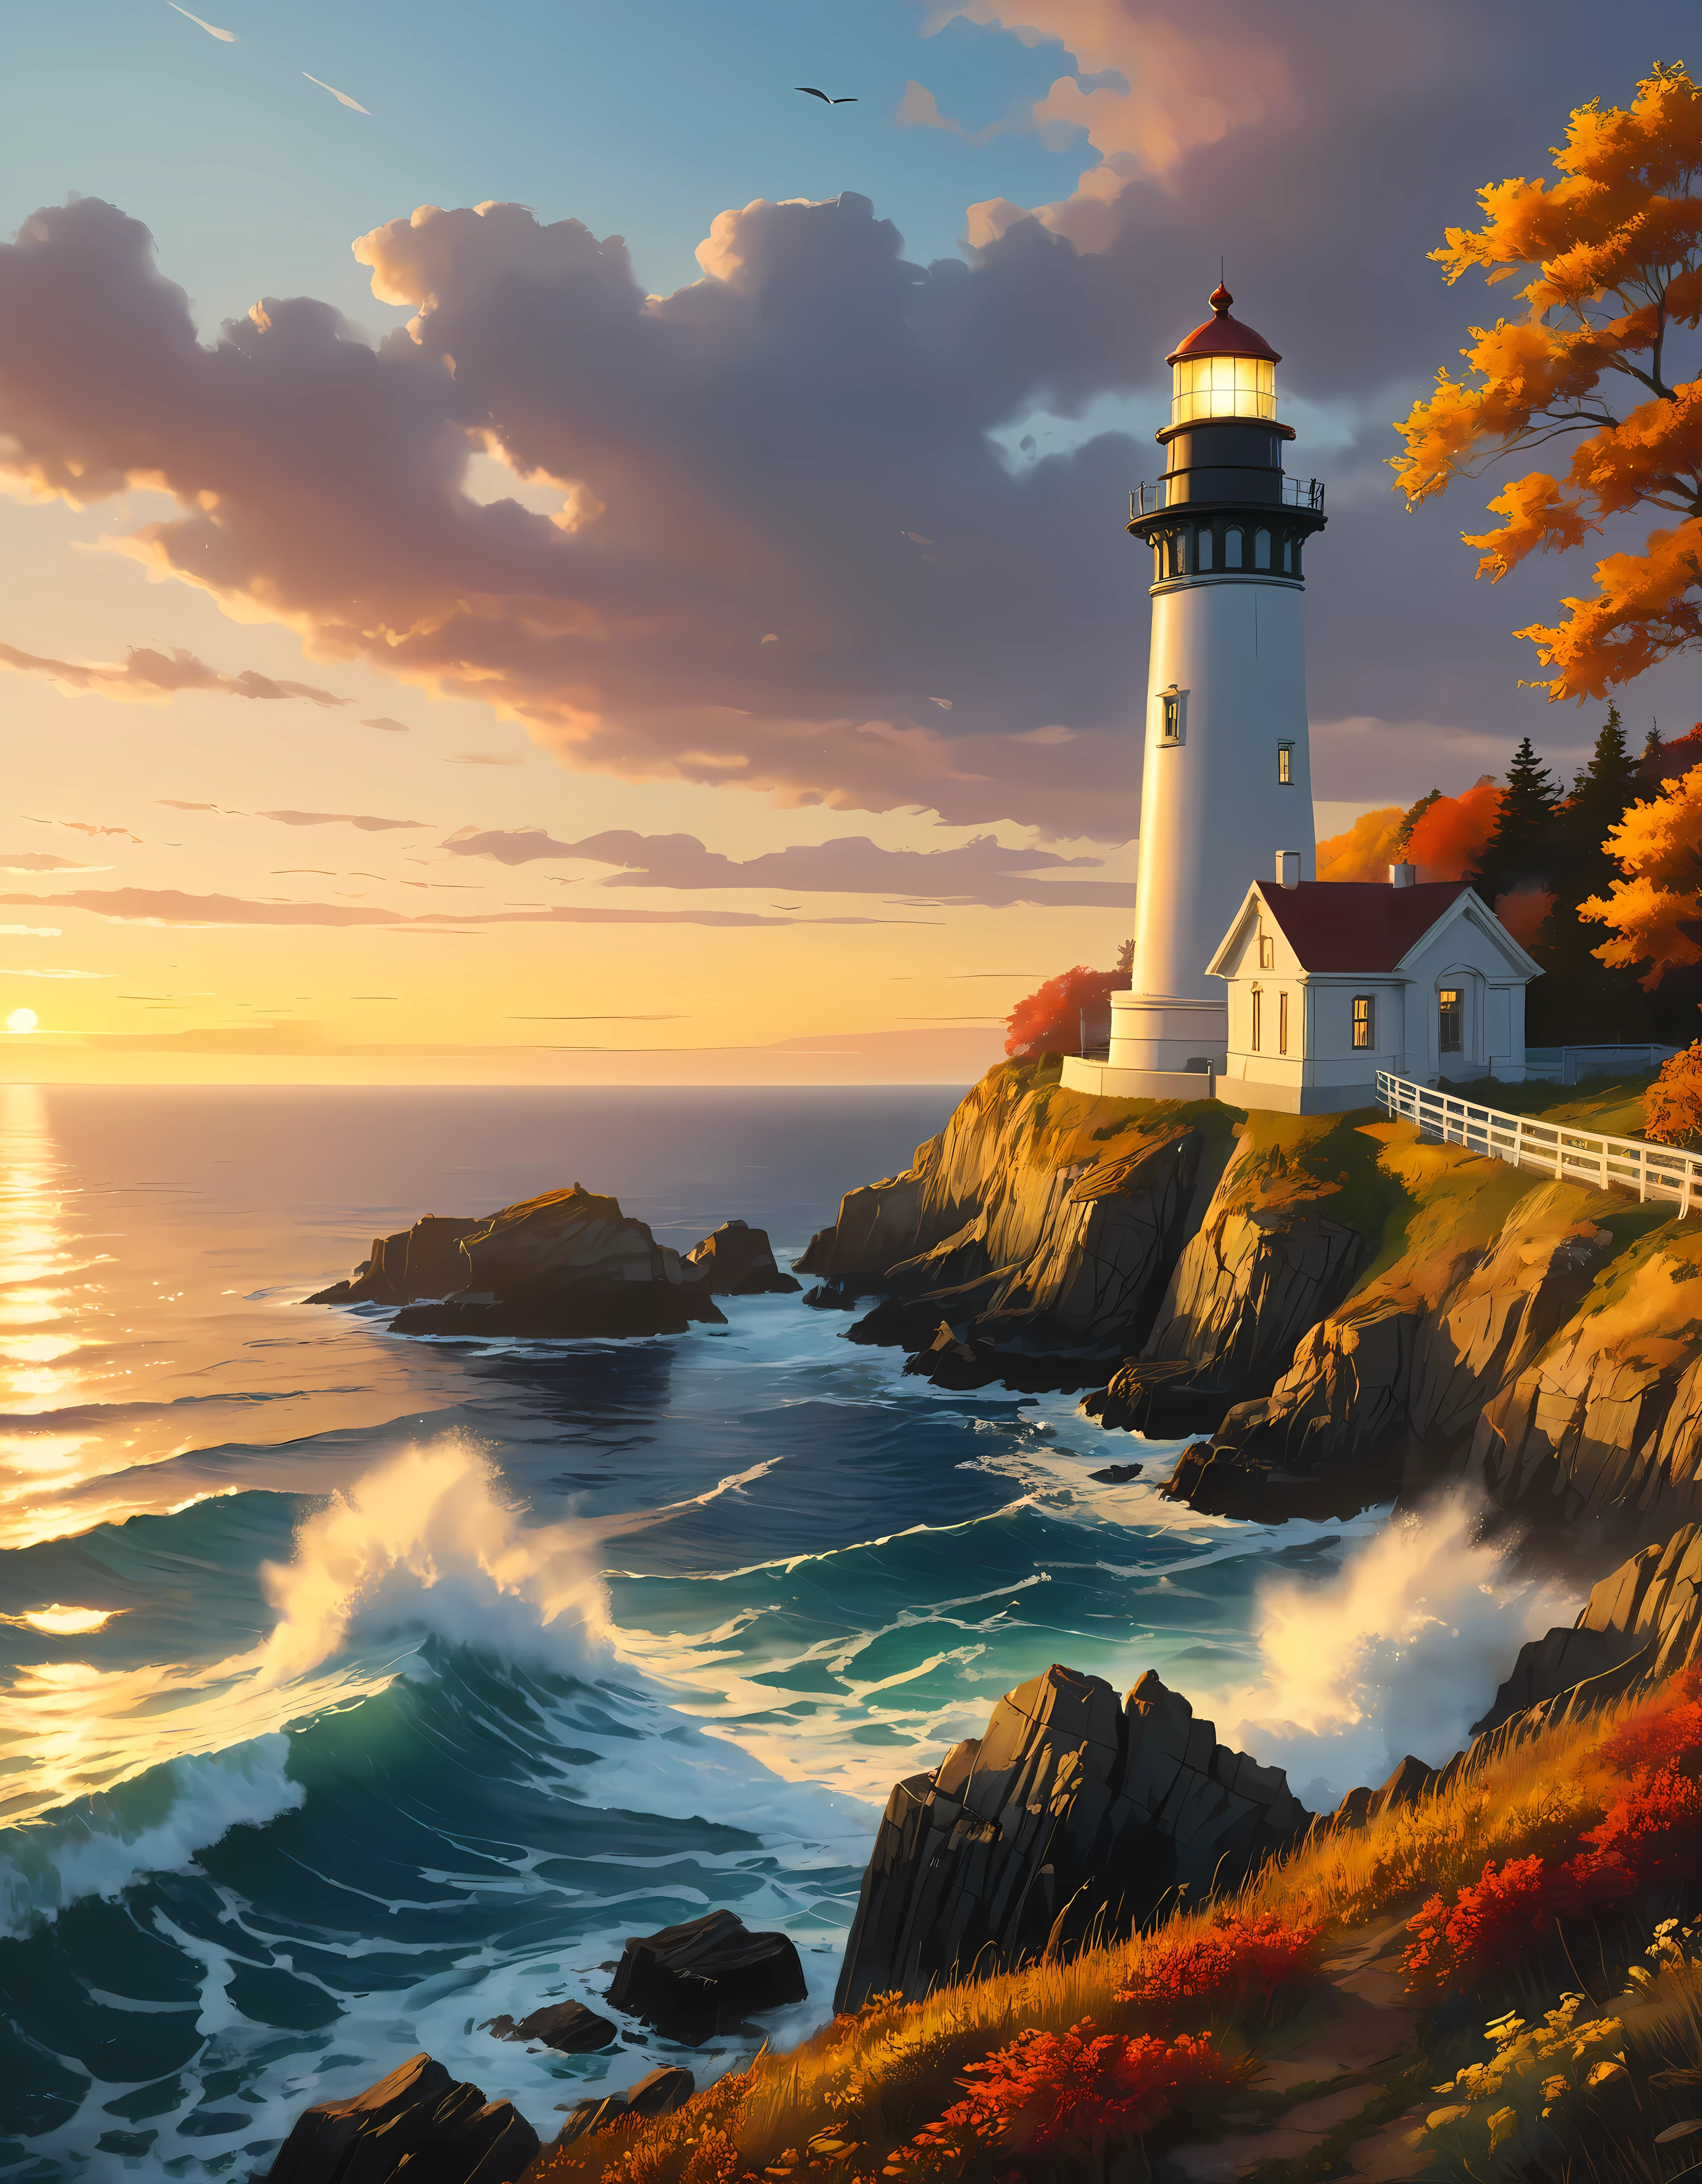 Скала возвышается над маяком с видом на огромный океан, завораживающий маяк, залитый светом заката,((золотой час времени):1.2),((Величественный пейзаж):1.2),((Закатное небо осенью):1.1),нежный свет золотого часа, потрясающие обои, красивые окрестности, оптимистичная матовая живопись, красивые цифровые изображения, Красивые и детализированные сцены, UHD под землей, UHD-пейзаж, Величественный концепт-арт, красивый маяк. |(Шедевр в максимальном разрешении 16К), Лучшее качество, (очень детальное качество обоев CG Unity 16k),(Мягкие цвета, 16k, высокодетализированное цифровое искусство),Супер подробный. | идеальный образ,16 тыс. УЕ5,официальная картина, сверхтонкий, глубина резкости, нет контраста, чистый острый фокус, Профессиональный, Нет размытия. | (((Более детально))).